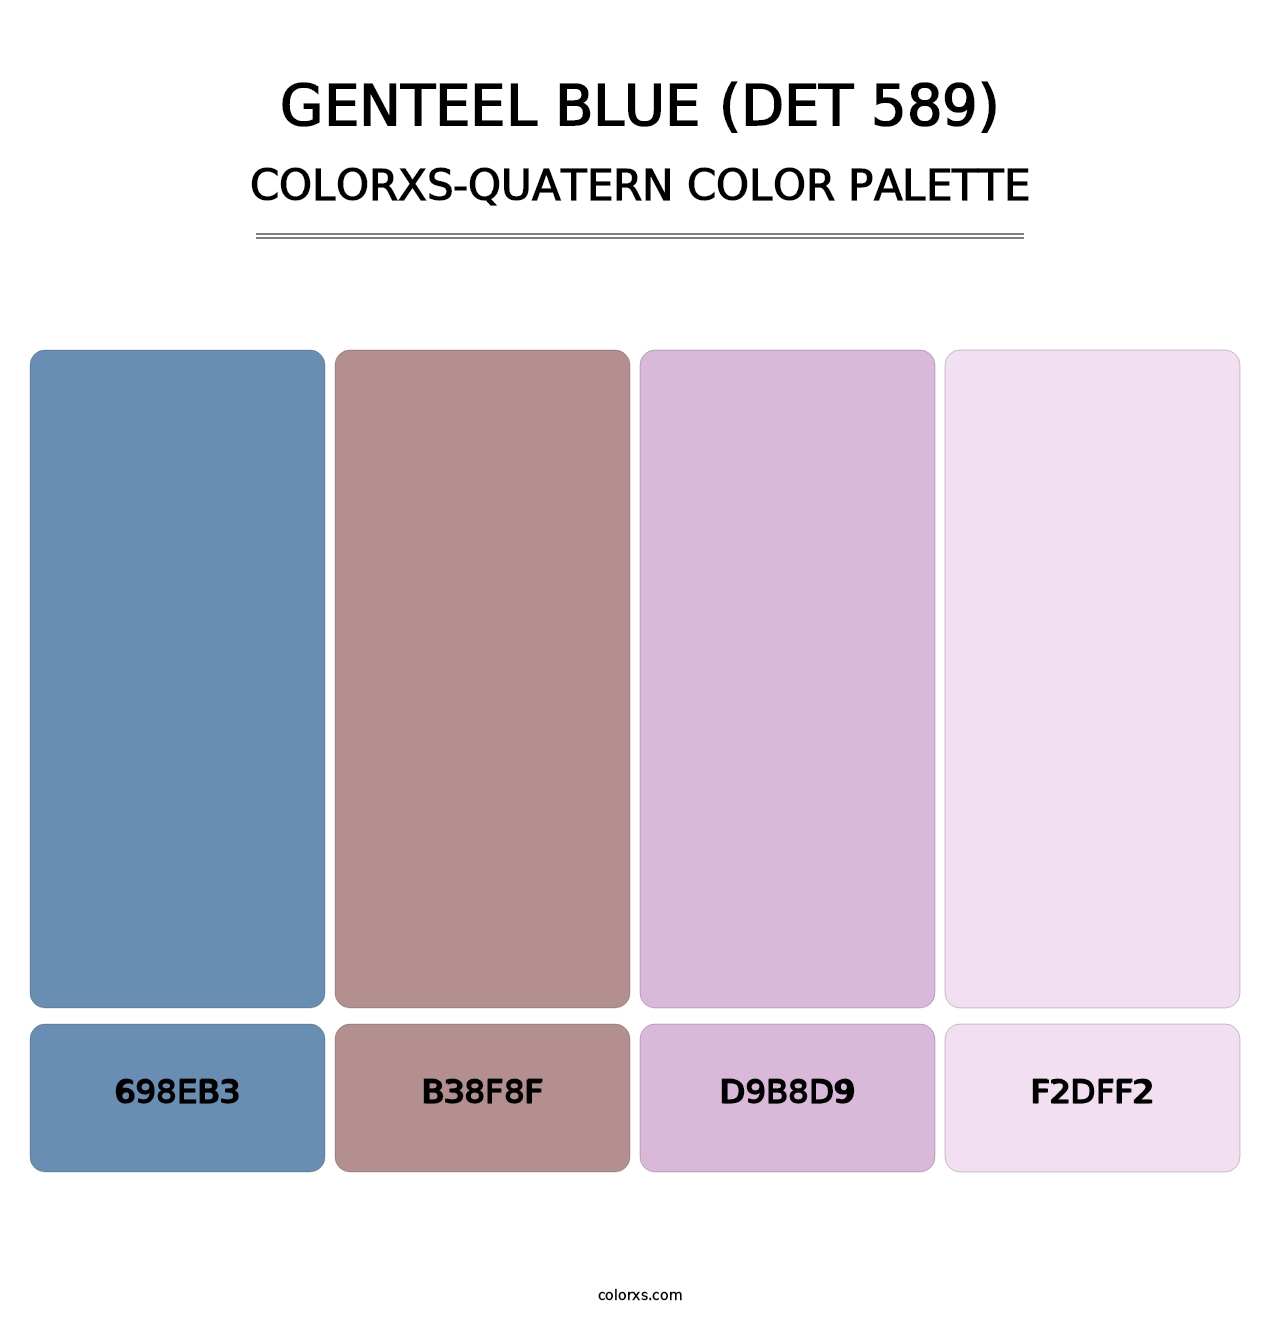 Genteel Blue (DET 589) - Colorxs Quatern Palette